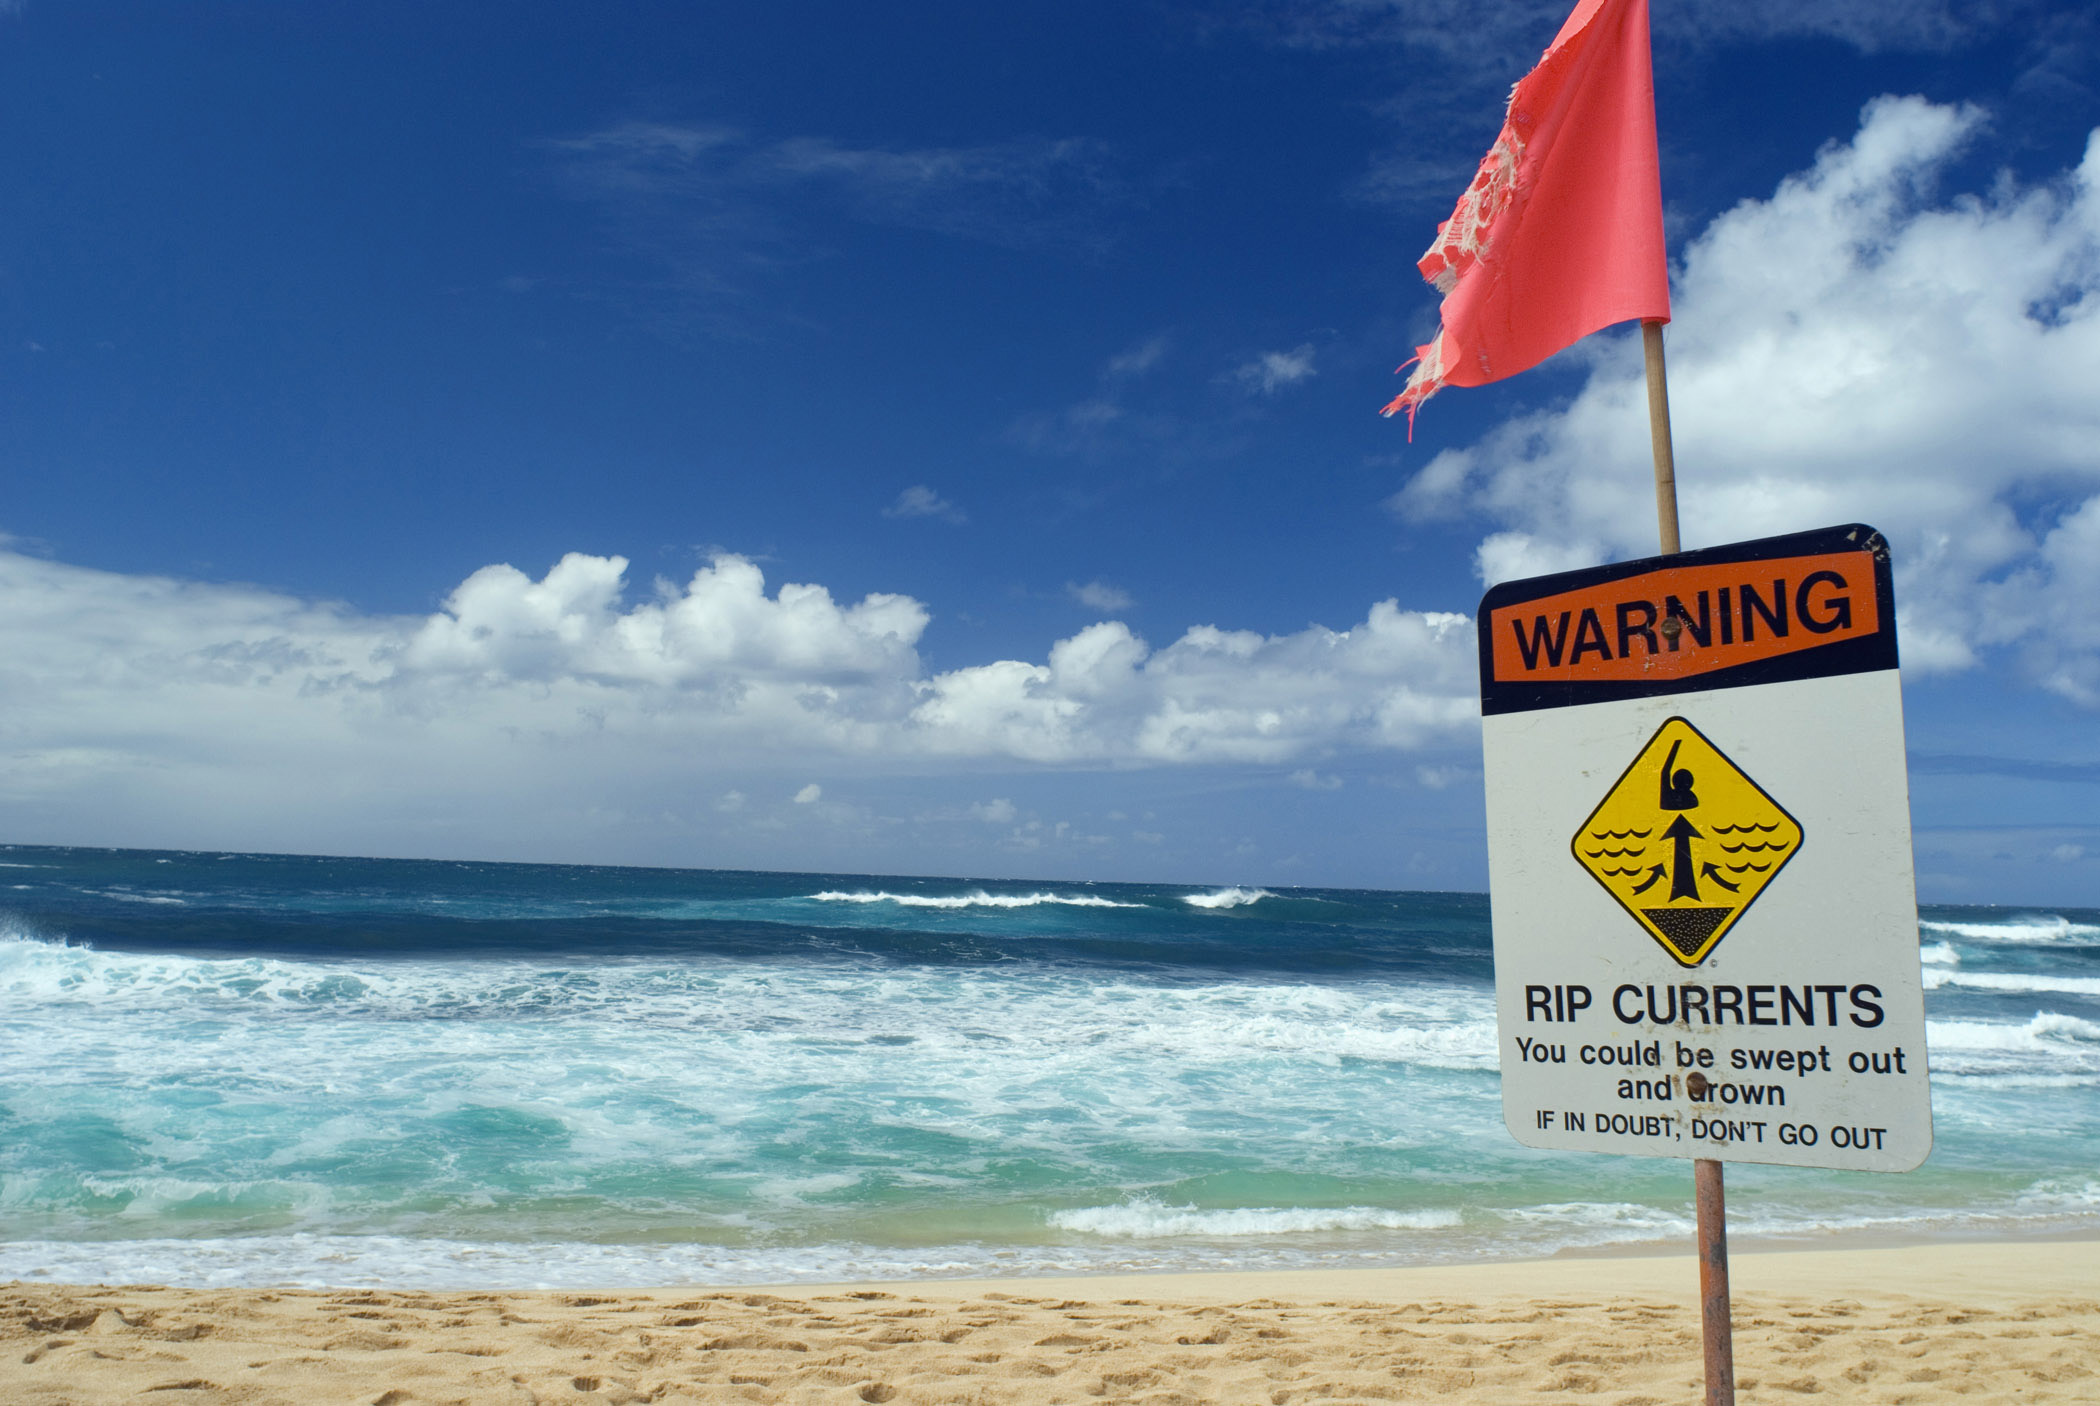 Perill d’ofegament a la platja: els corrents de retorn